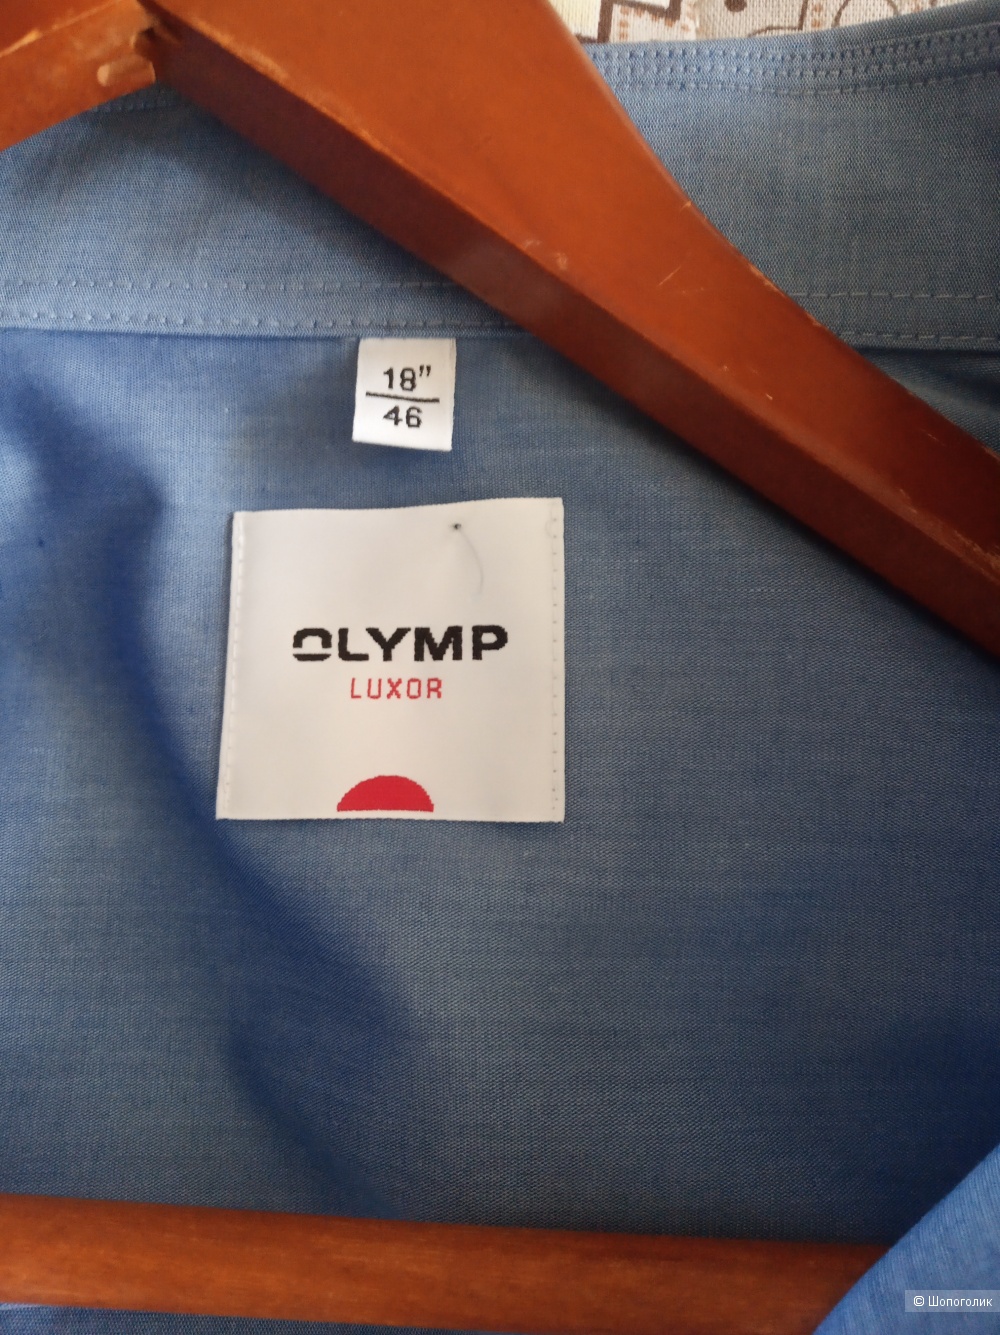 Рубашка Olymp Luxor, размер 18", 46